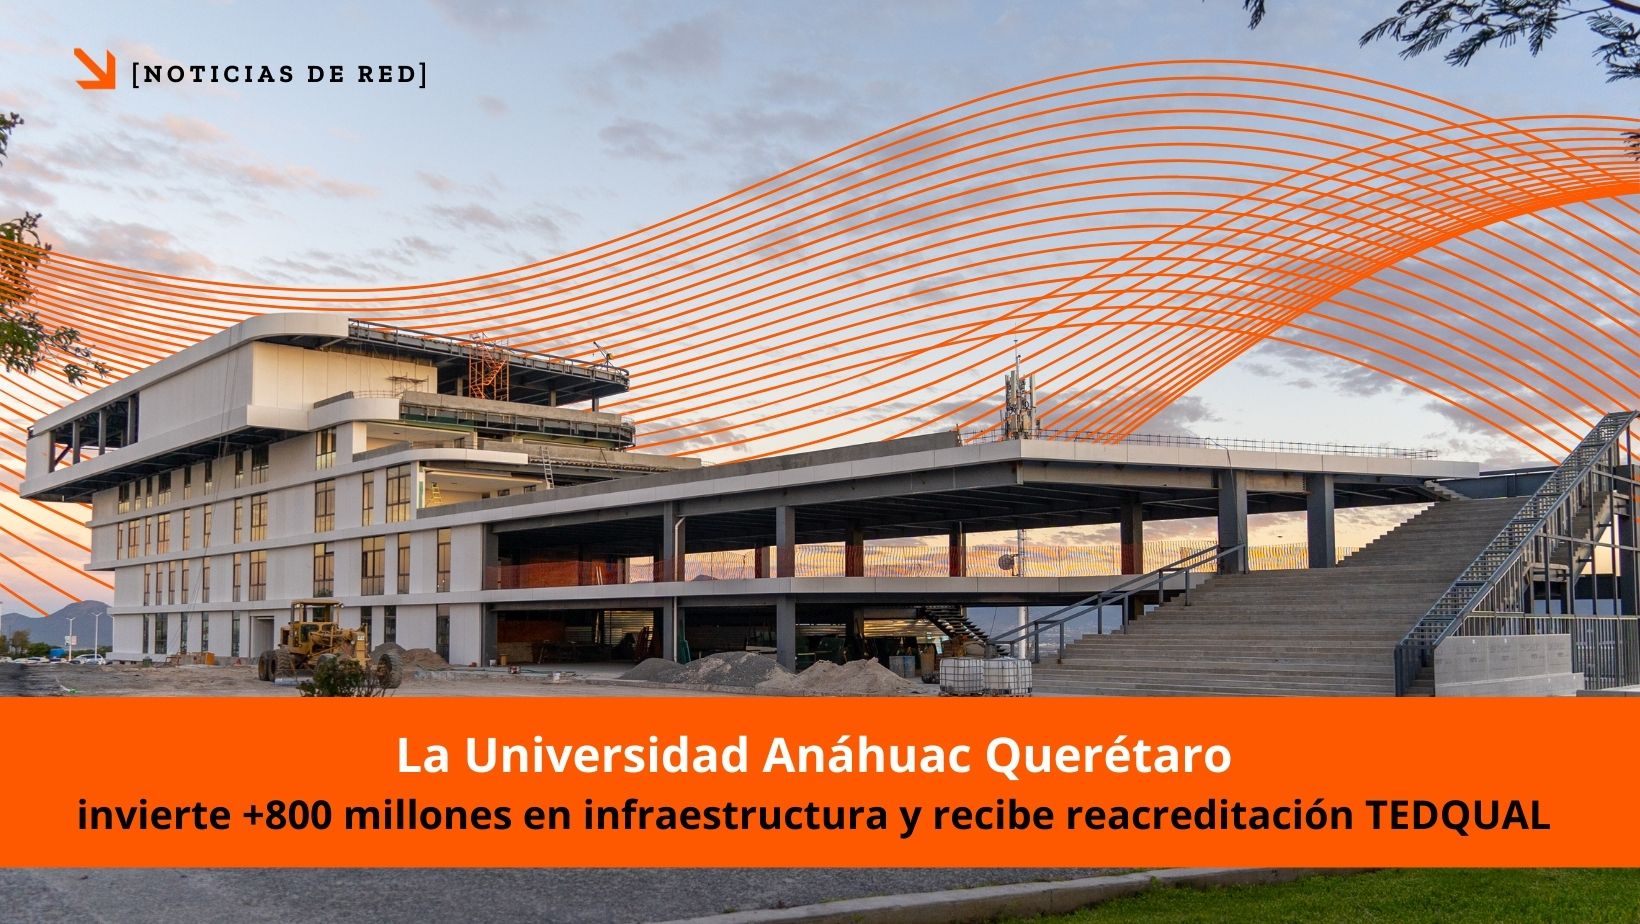 Avances y Reconocimientos en la Universidad Anáhuac Querétaro, institución perteneciente a la Red de Universidades Anáhuac